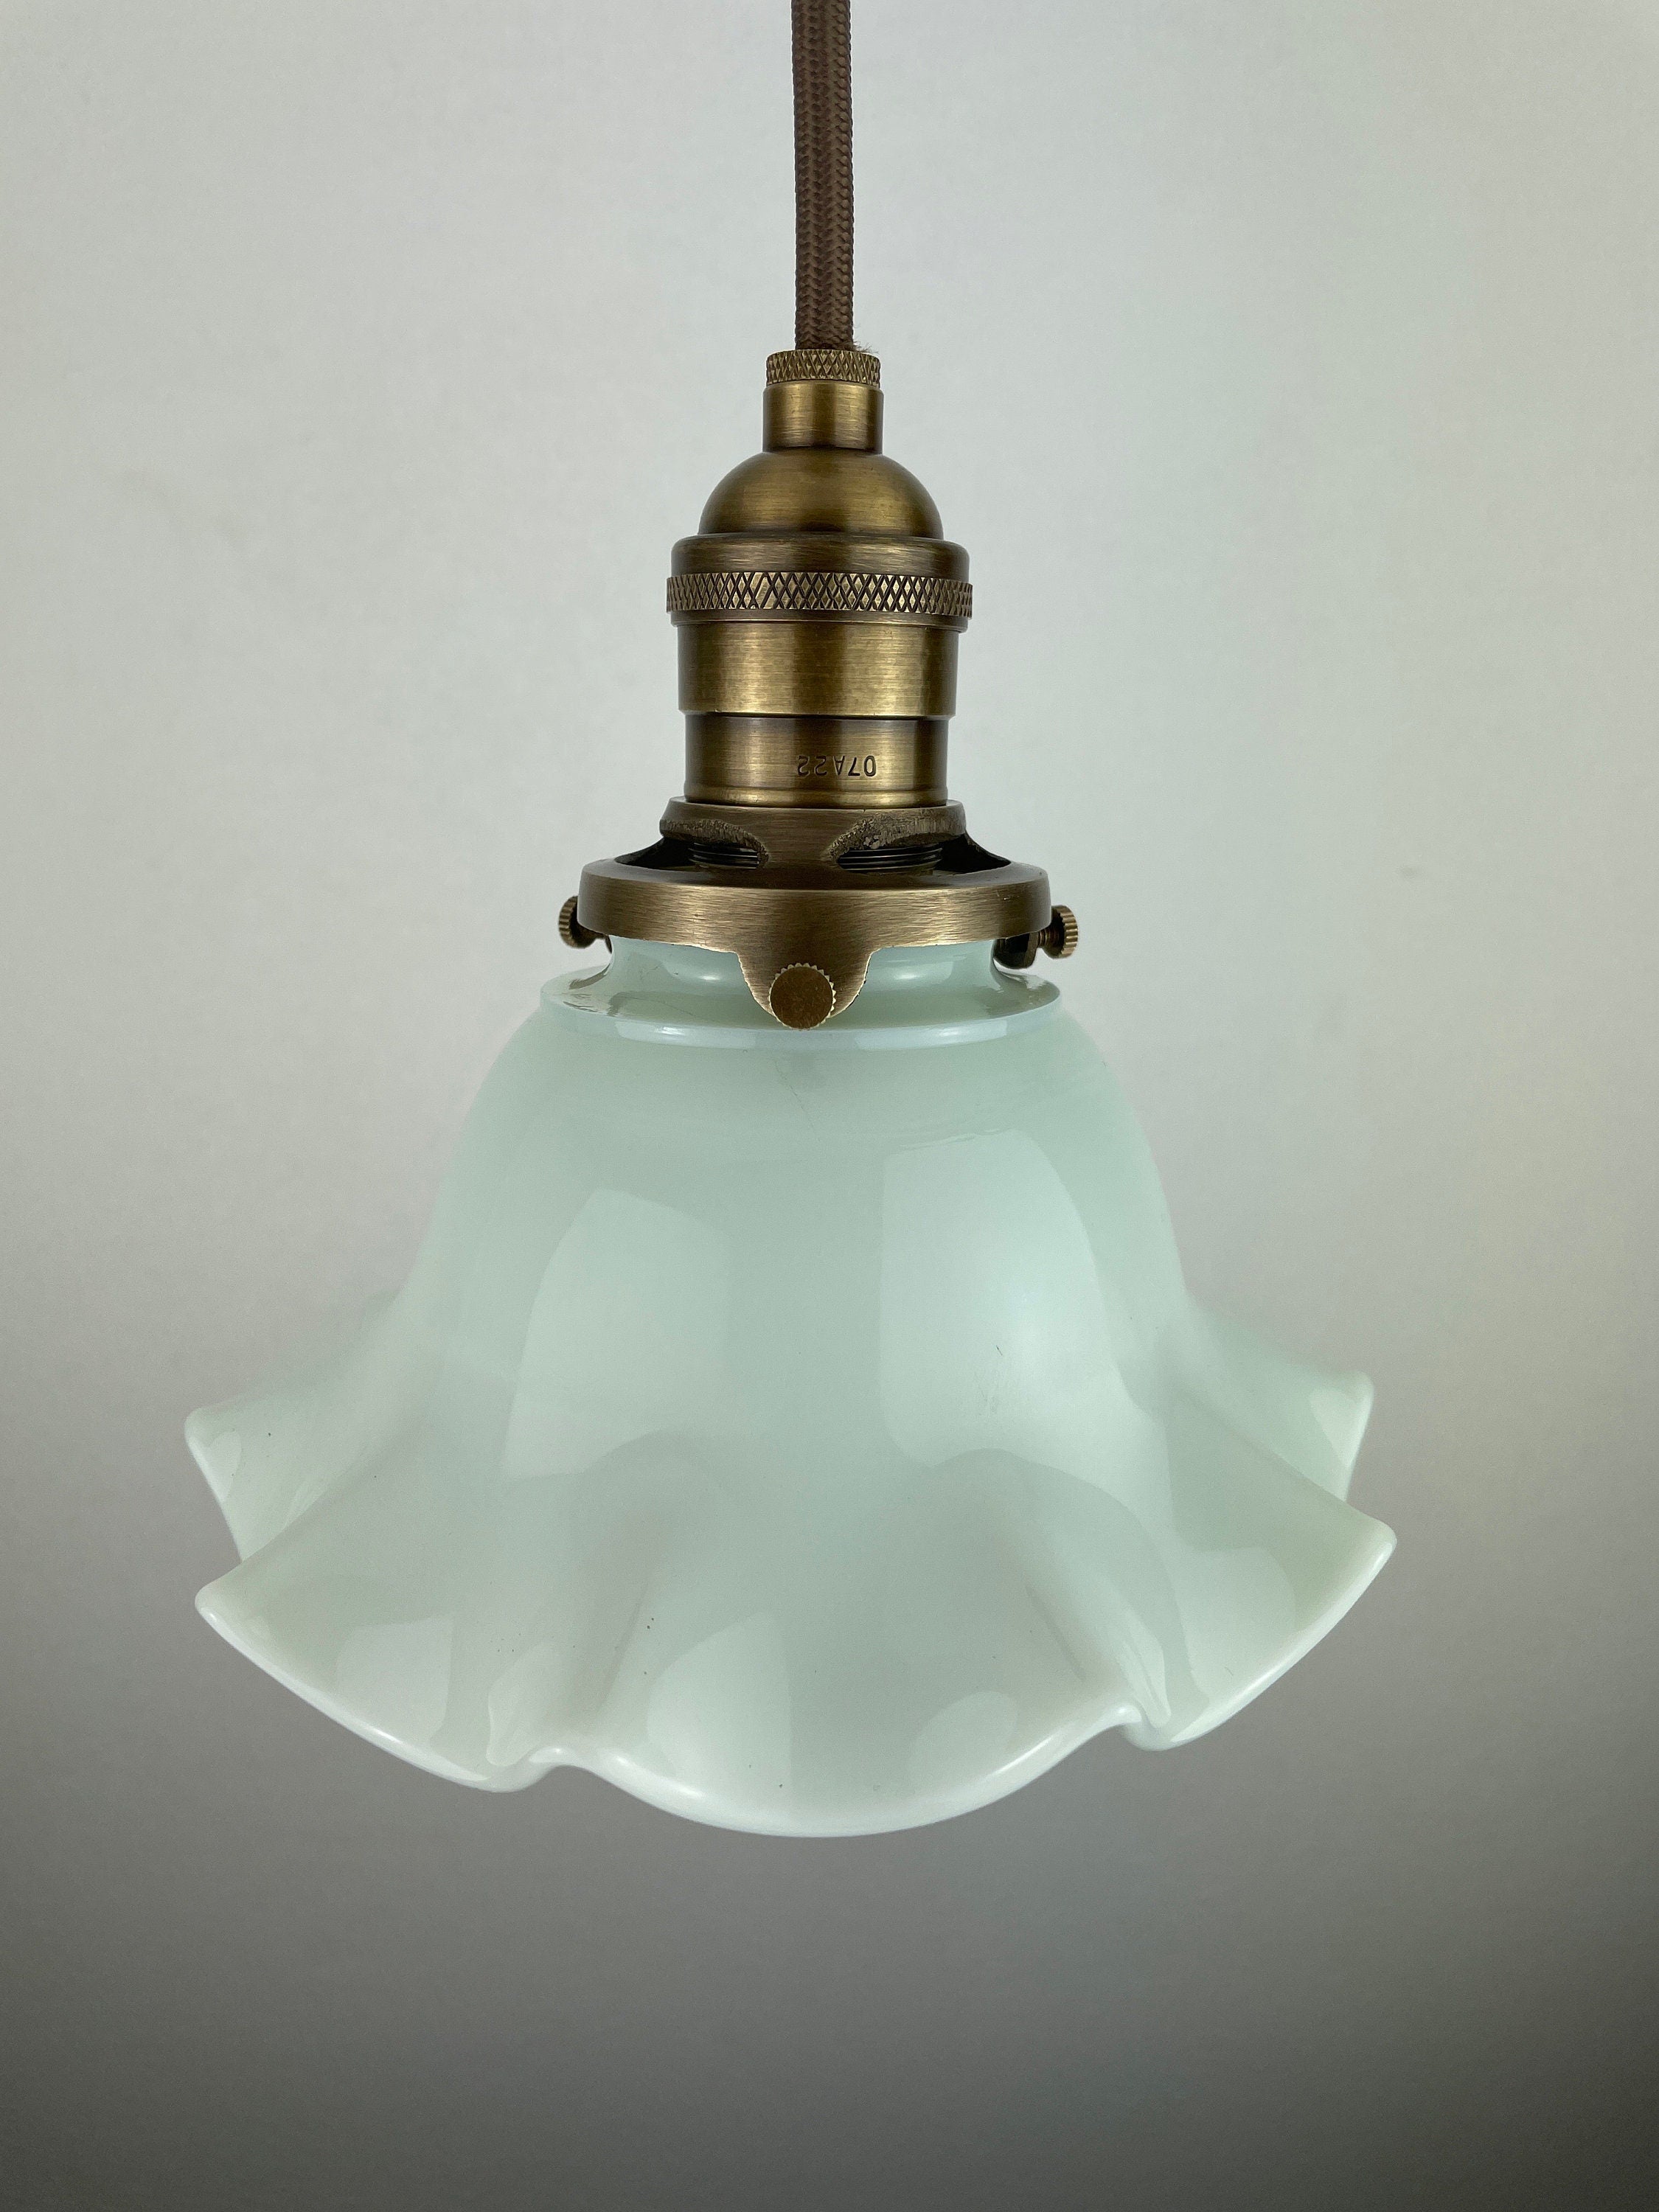 Antique 1920's Ruffled Petticoat Petite Milk Glass Pendant Light with 6 1/4